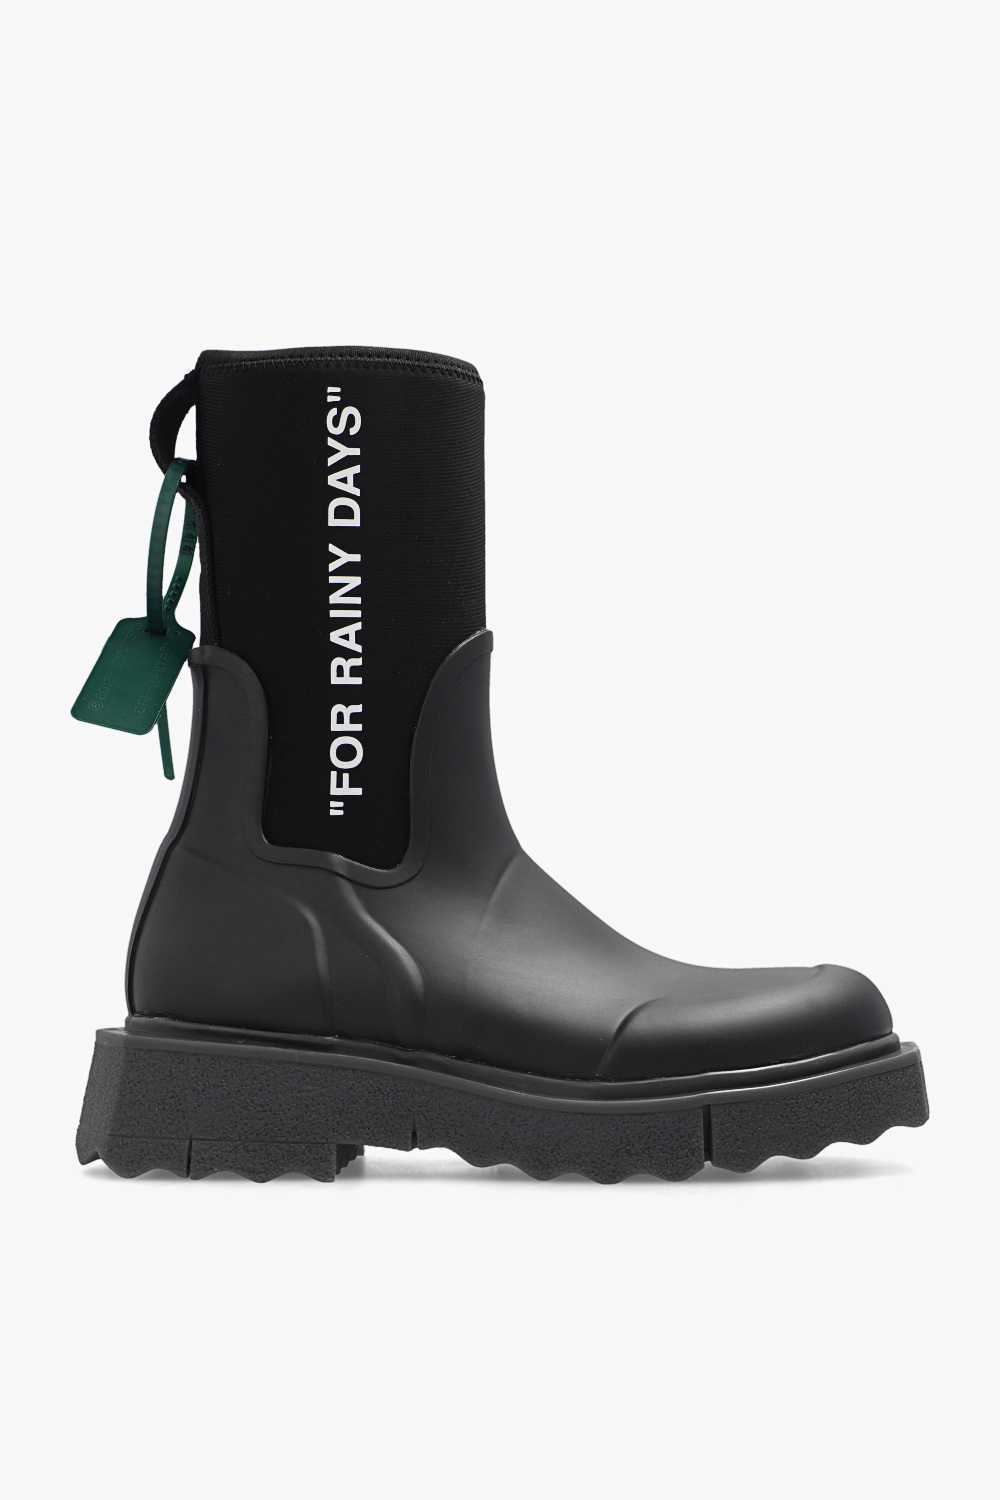 Off-White 'Sponge' rain boots, Women's Shoes